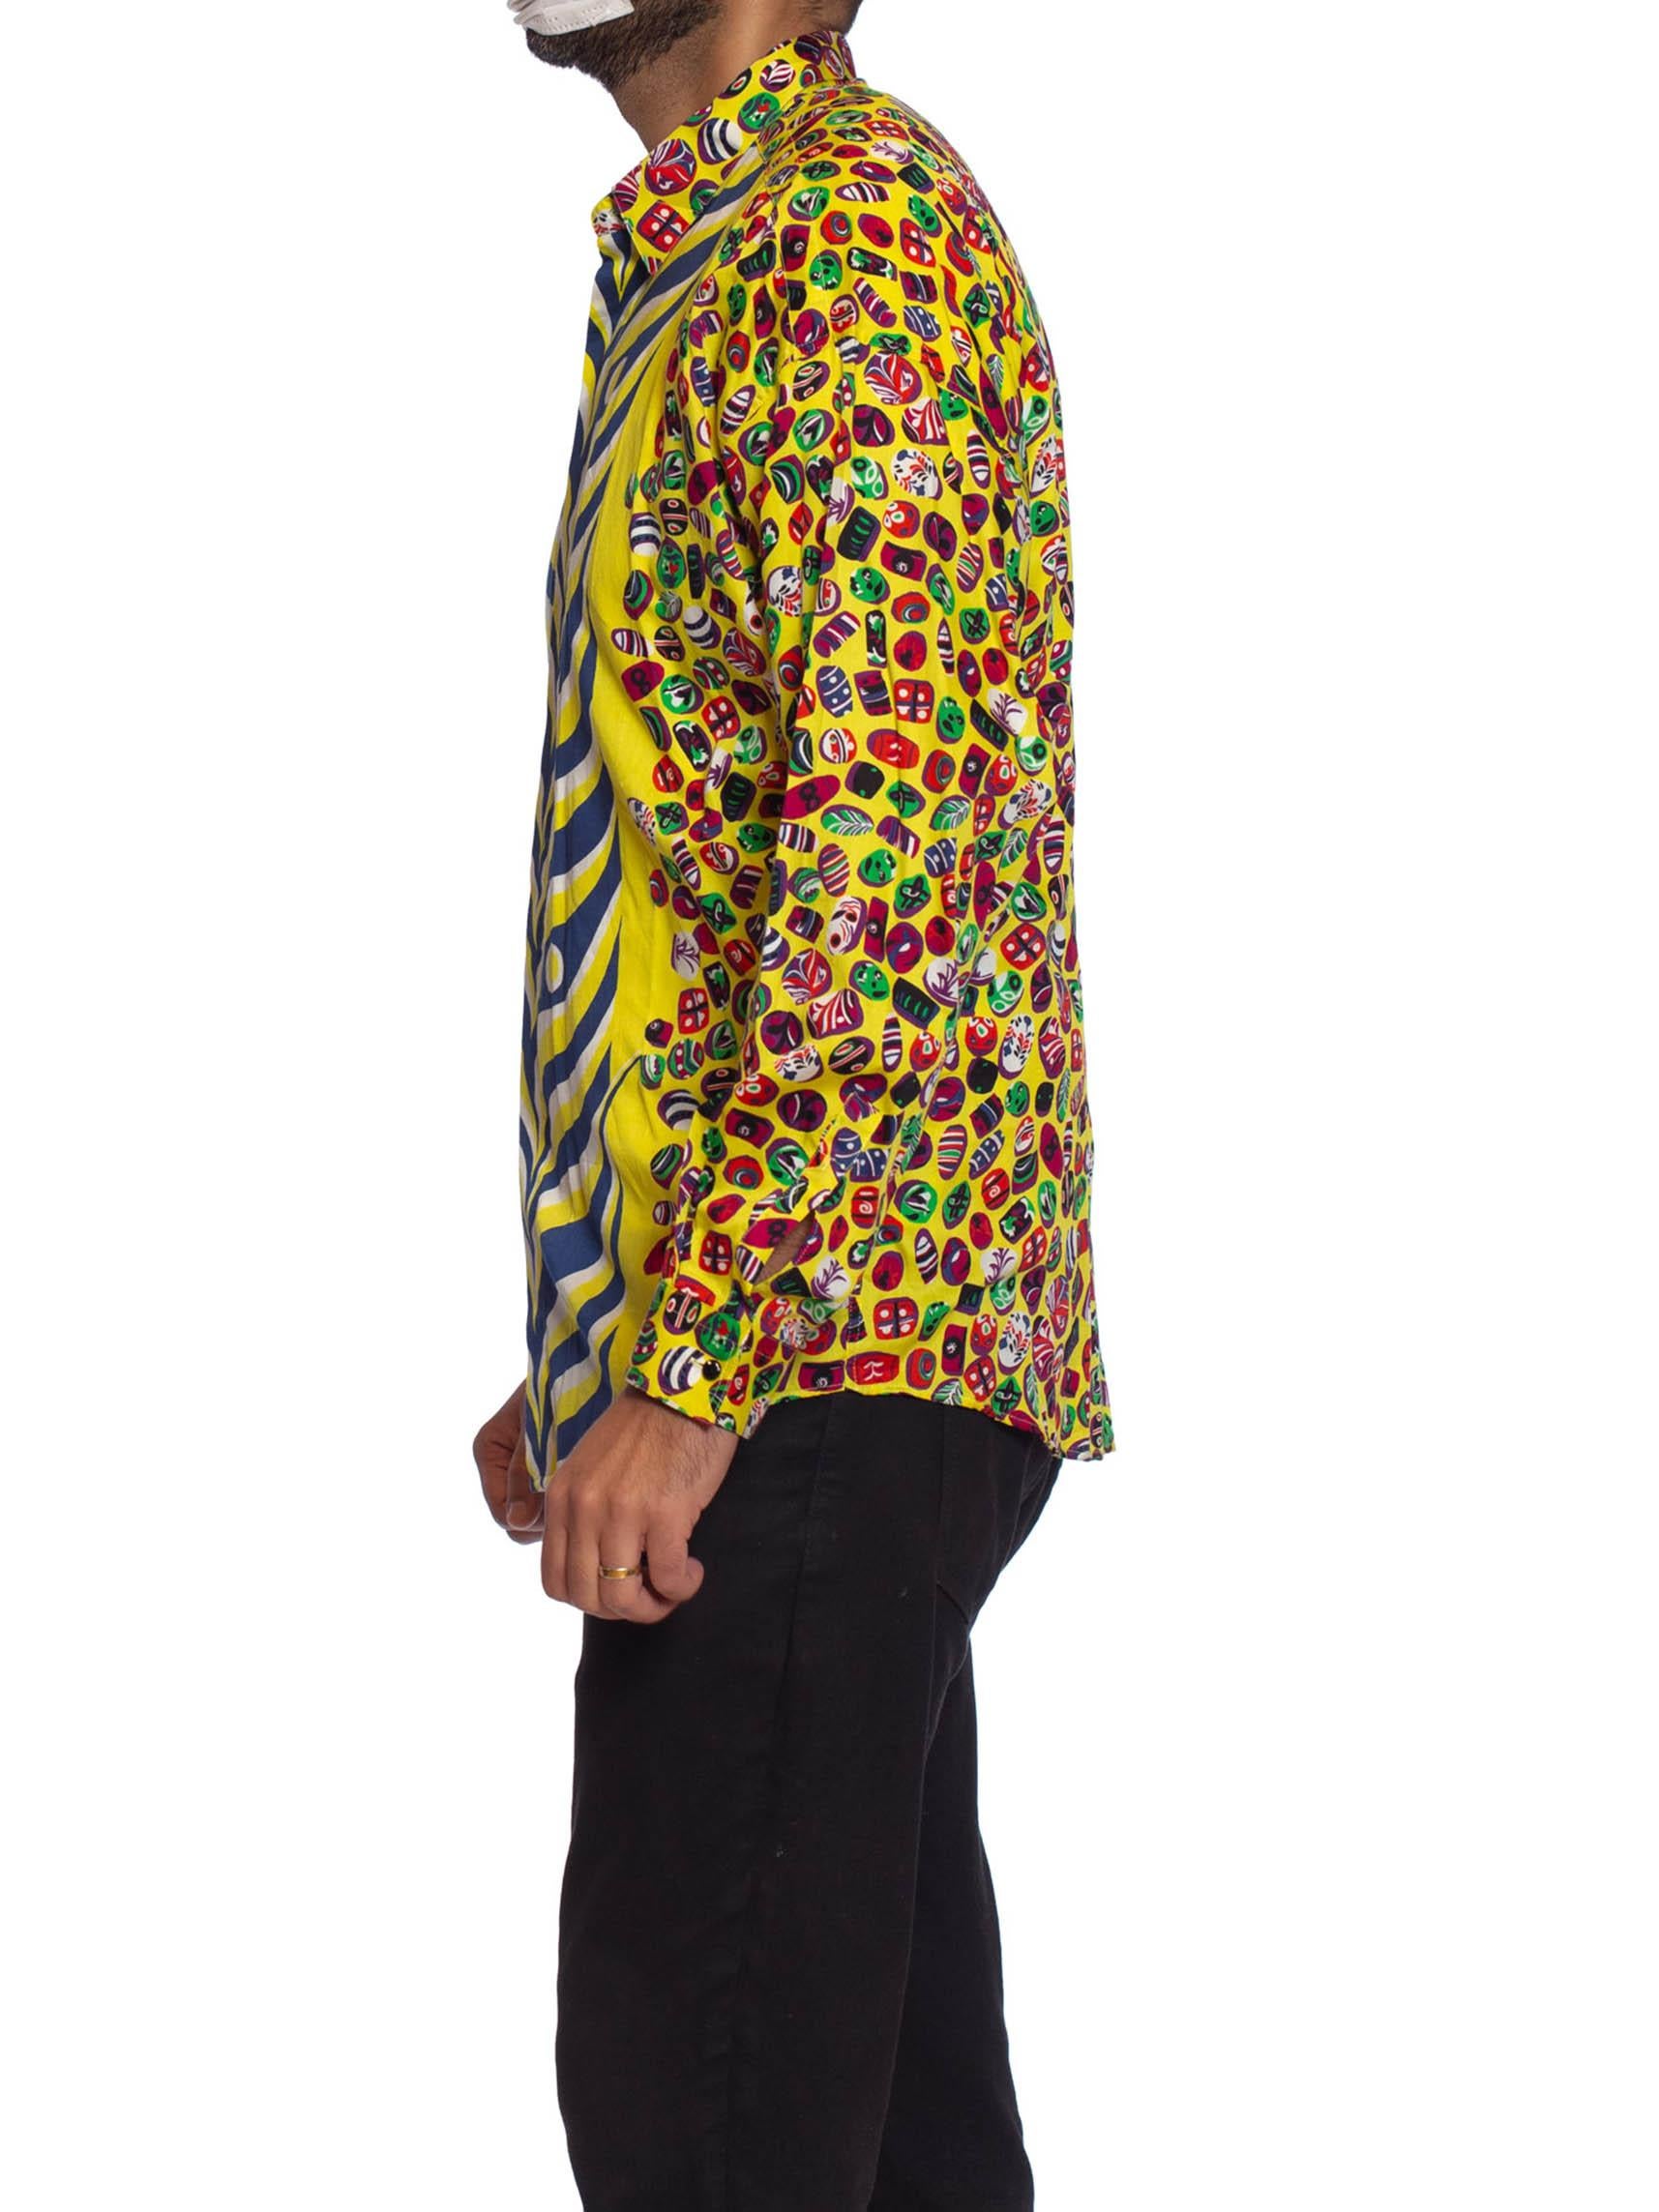 chemise pour homme en coton imprimé GIANNI VERSACE des années 1990, avec impression d'inspiration japonaise